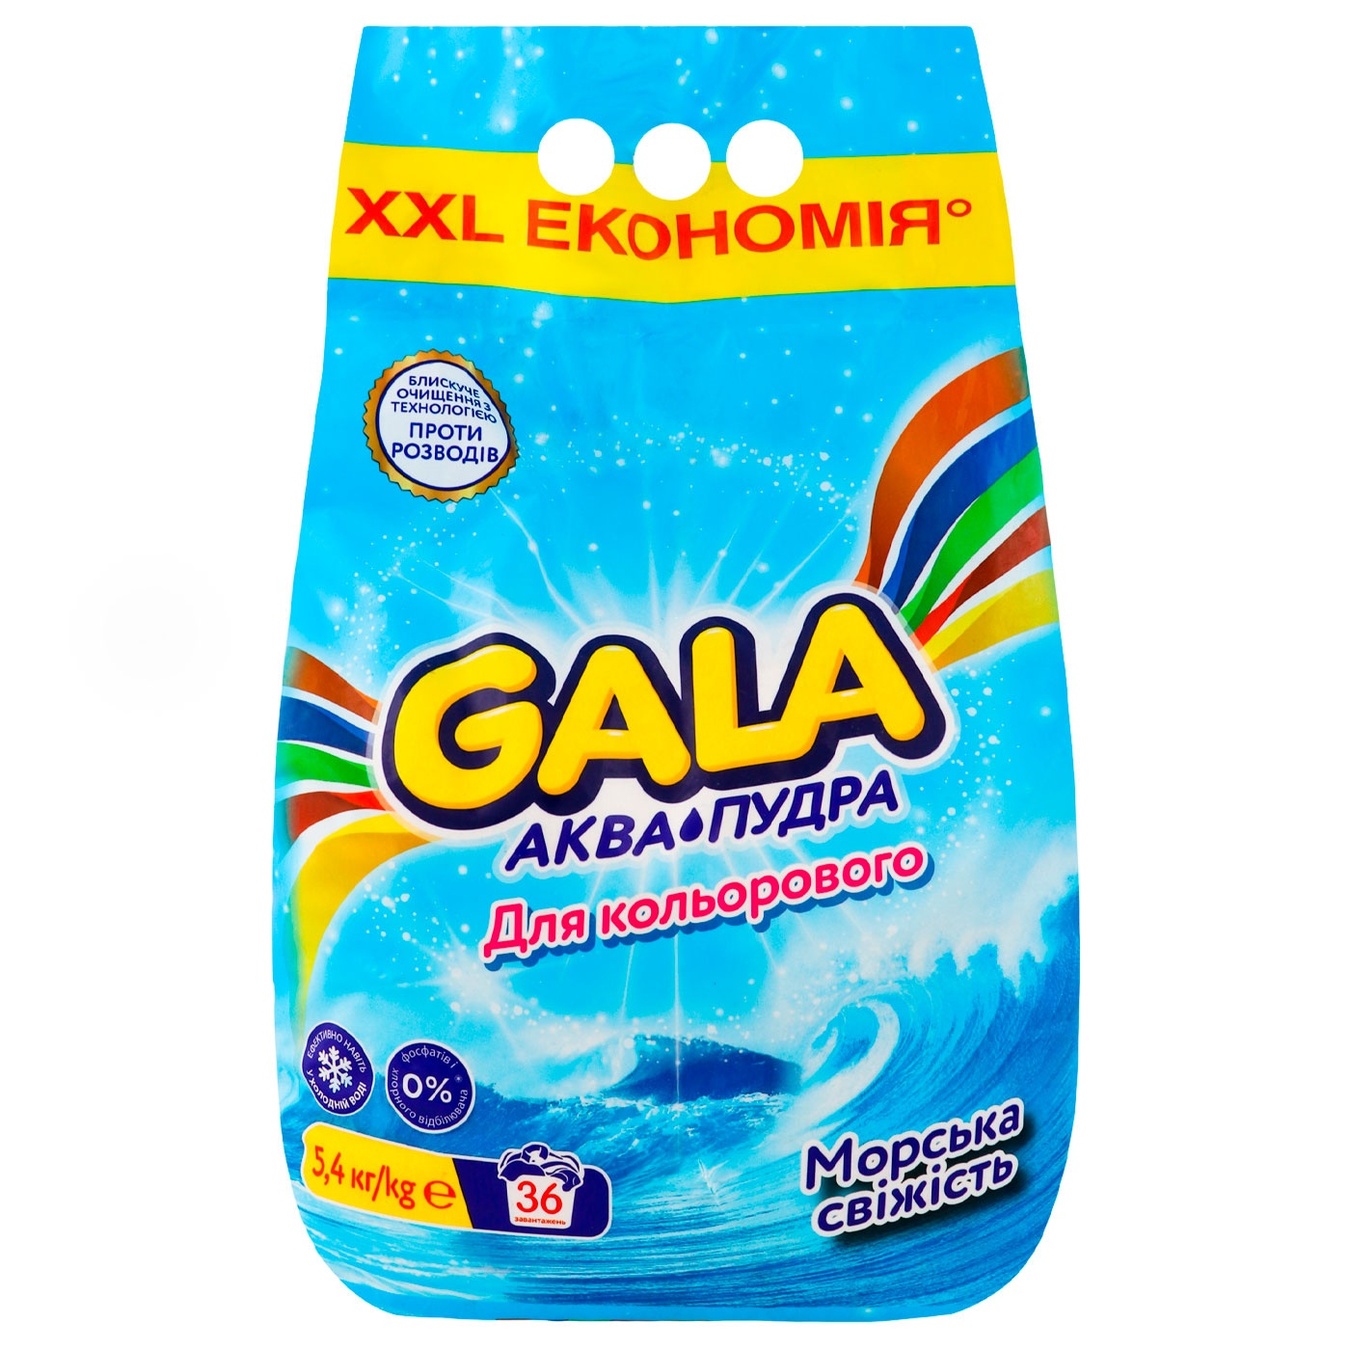 Порошок пральный автомат Gala аква-пудра для кольорових речей морська свiжість 5,4кг